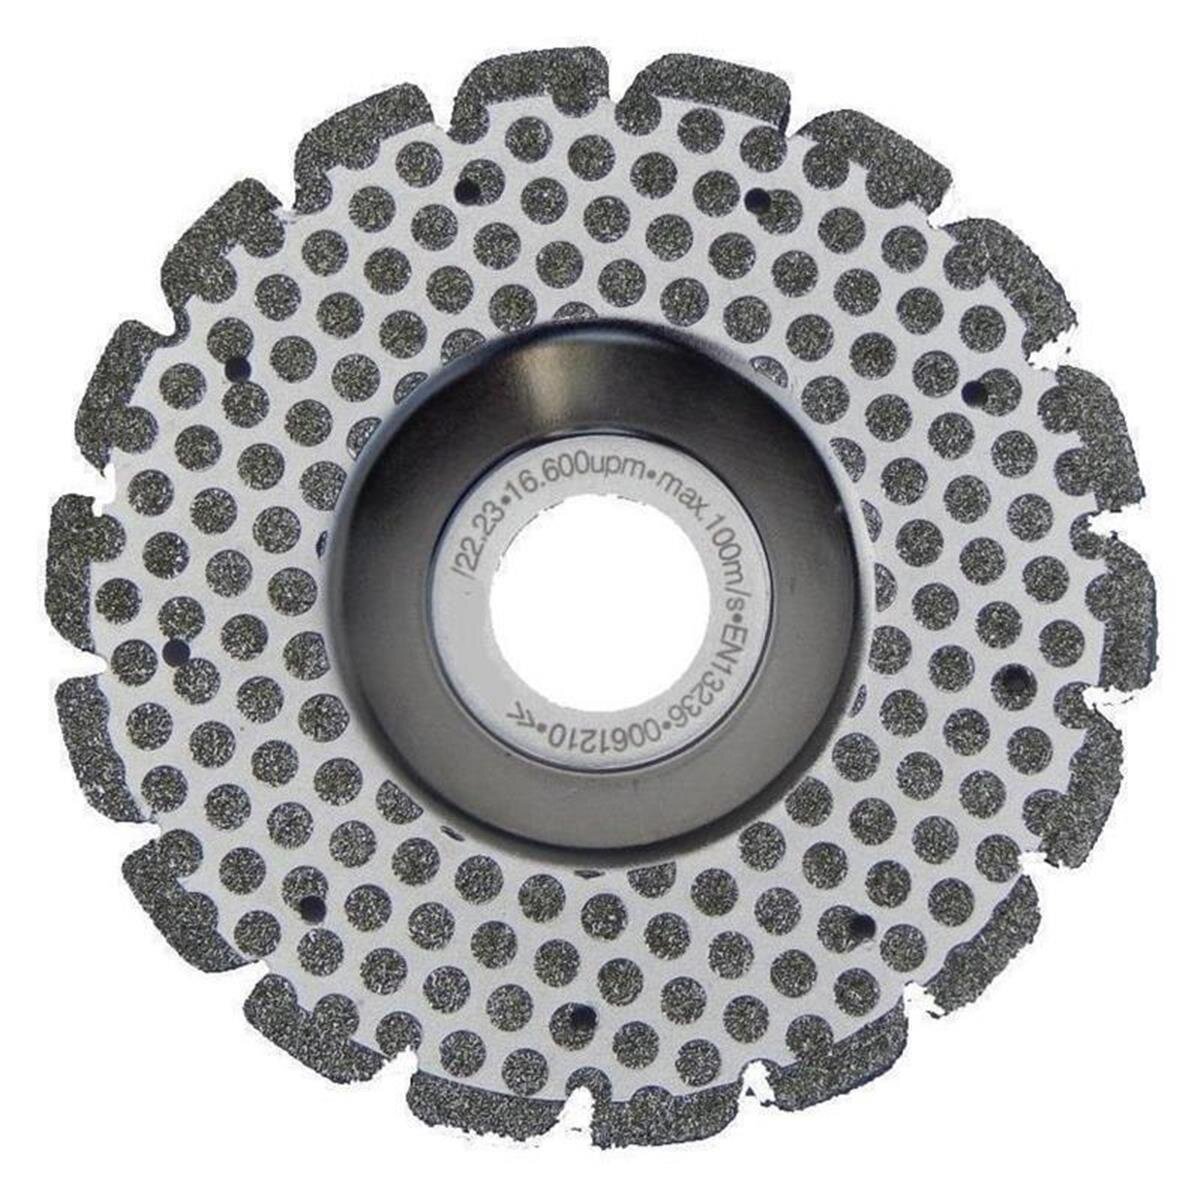 ultradünn trockene Eckschneider 115/125 mm Diamant-Trennscheiben-Sägeblatt für Ceramic Microlite